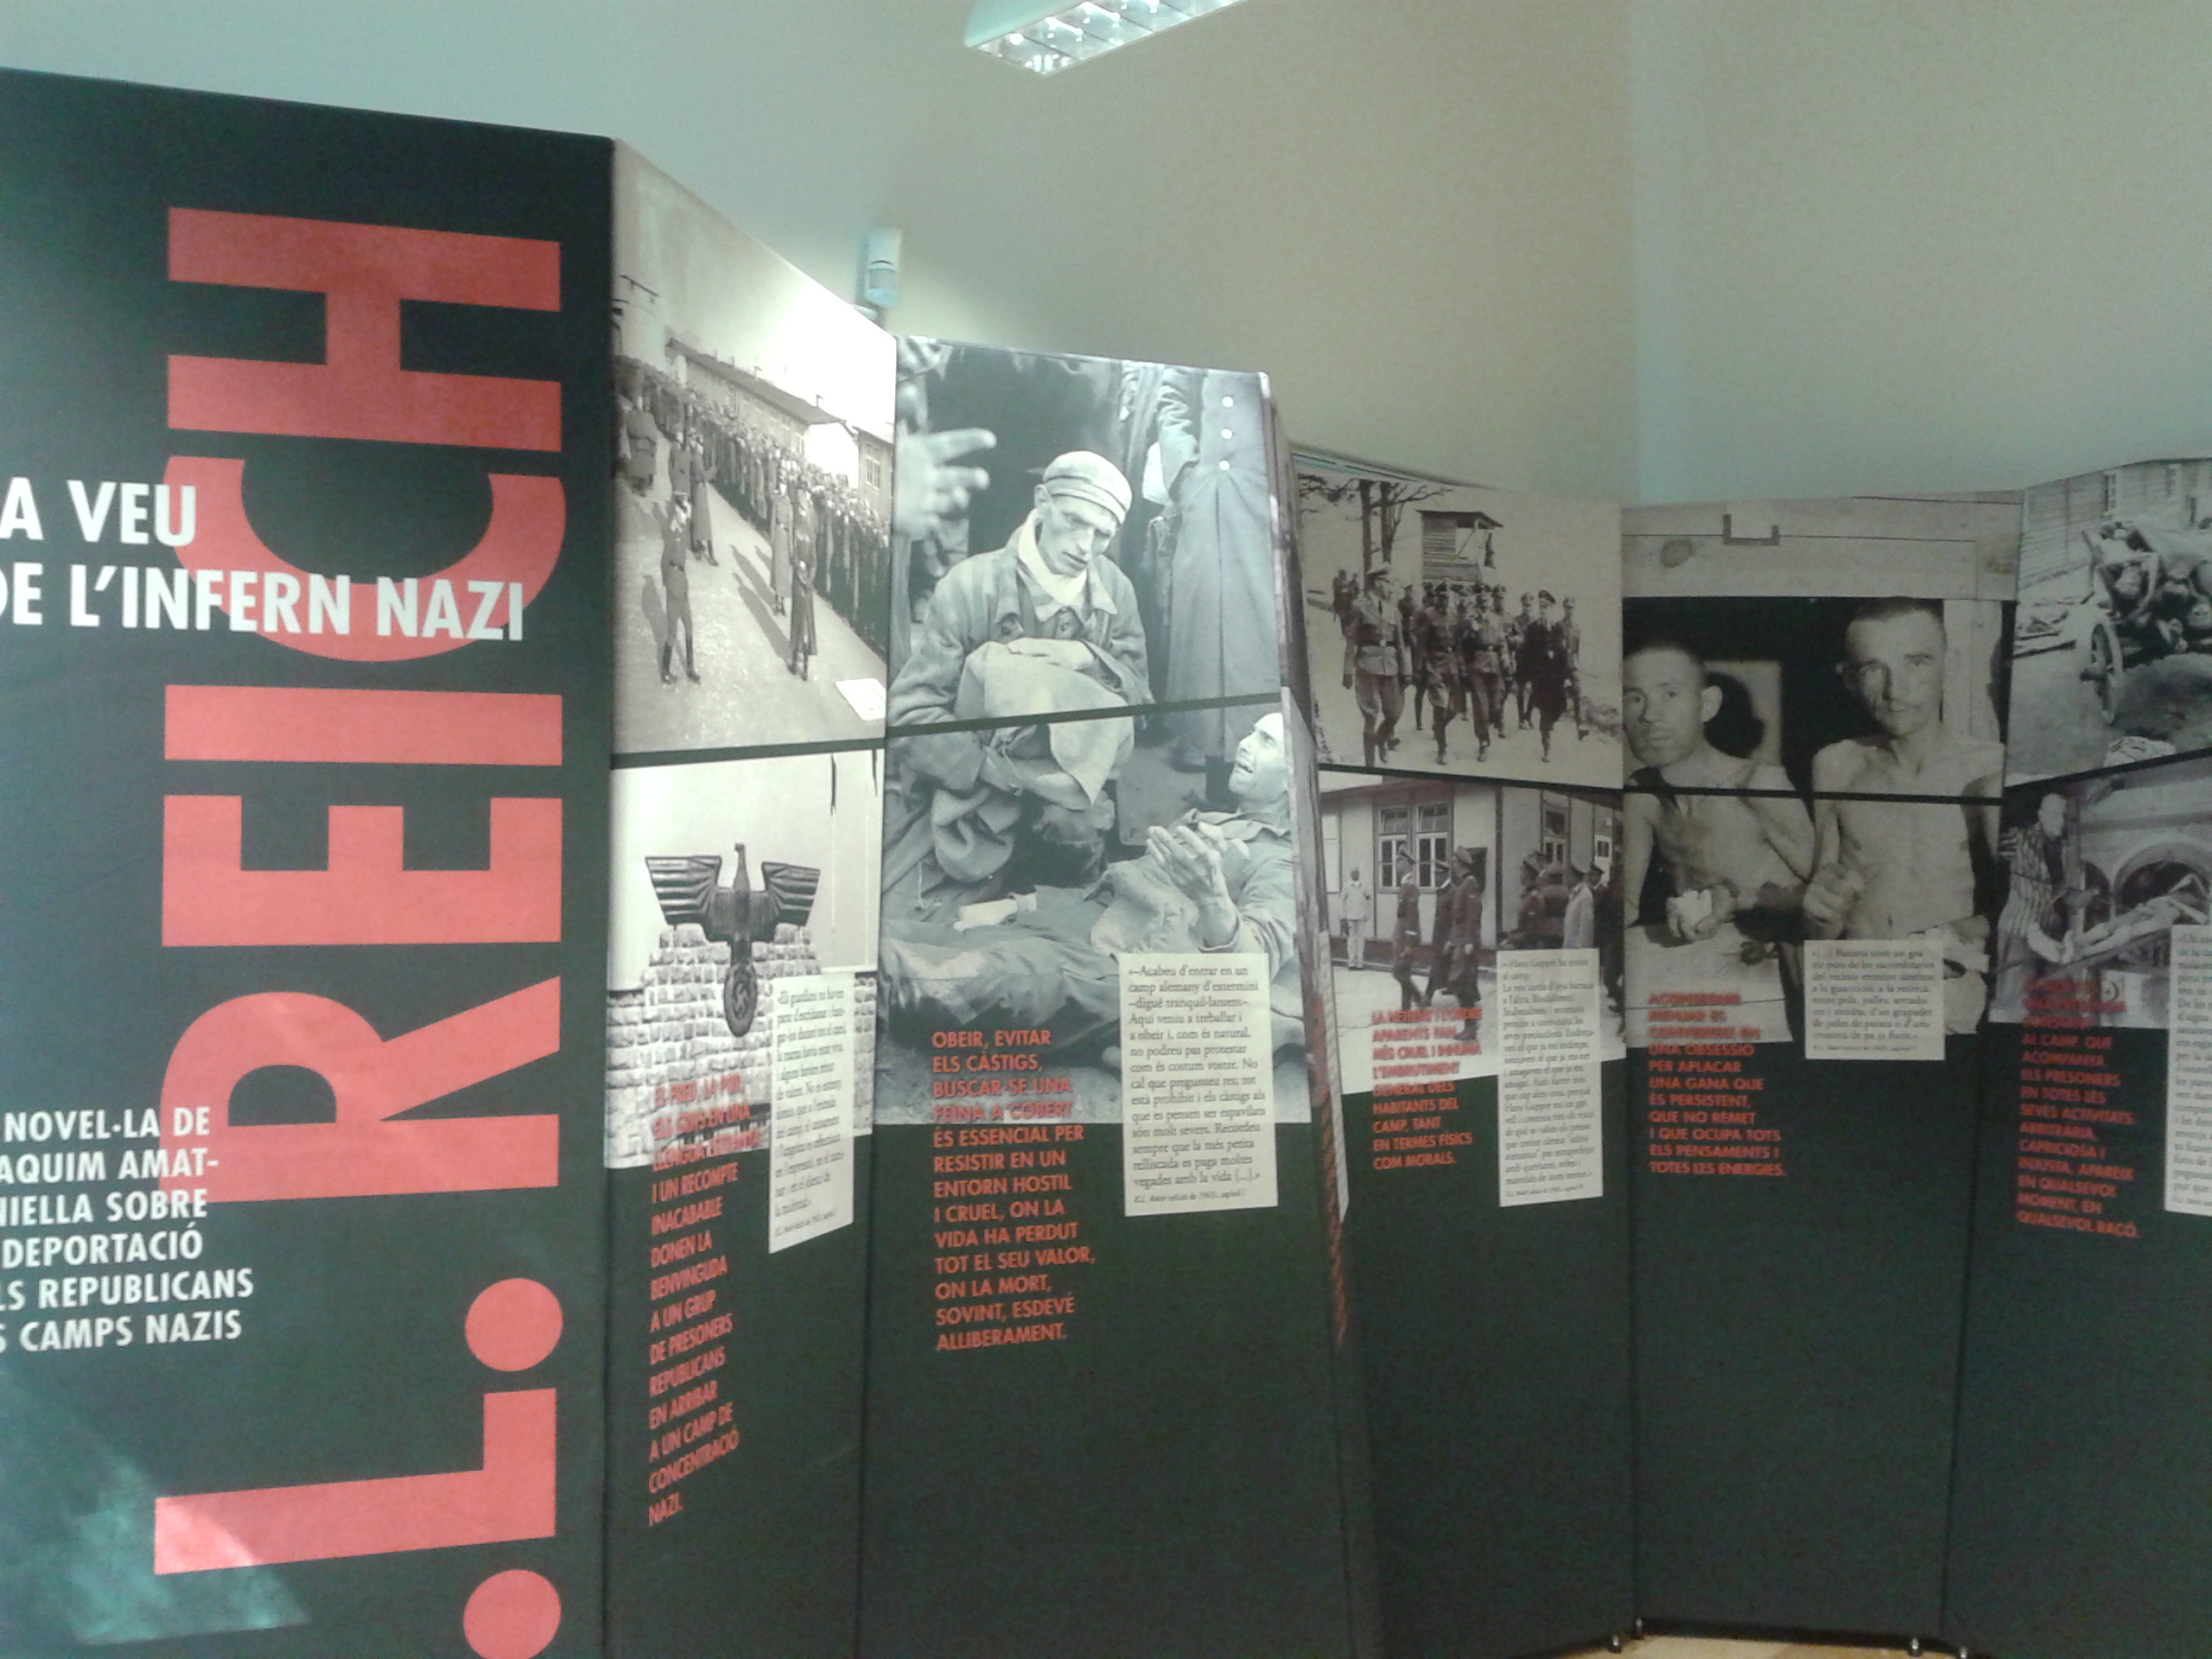 Visita guiada a l’exposició “K.L. Reich: la veu de l’infern nazi”, a Castellar del Vallès